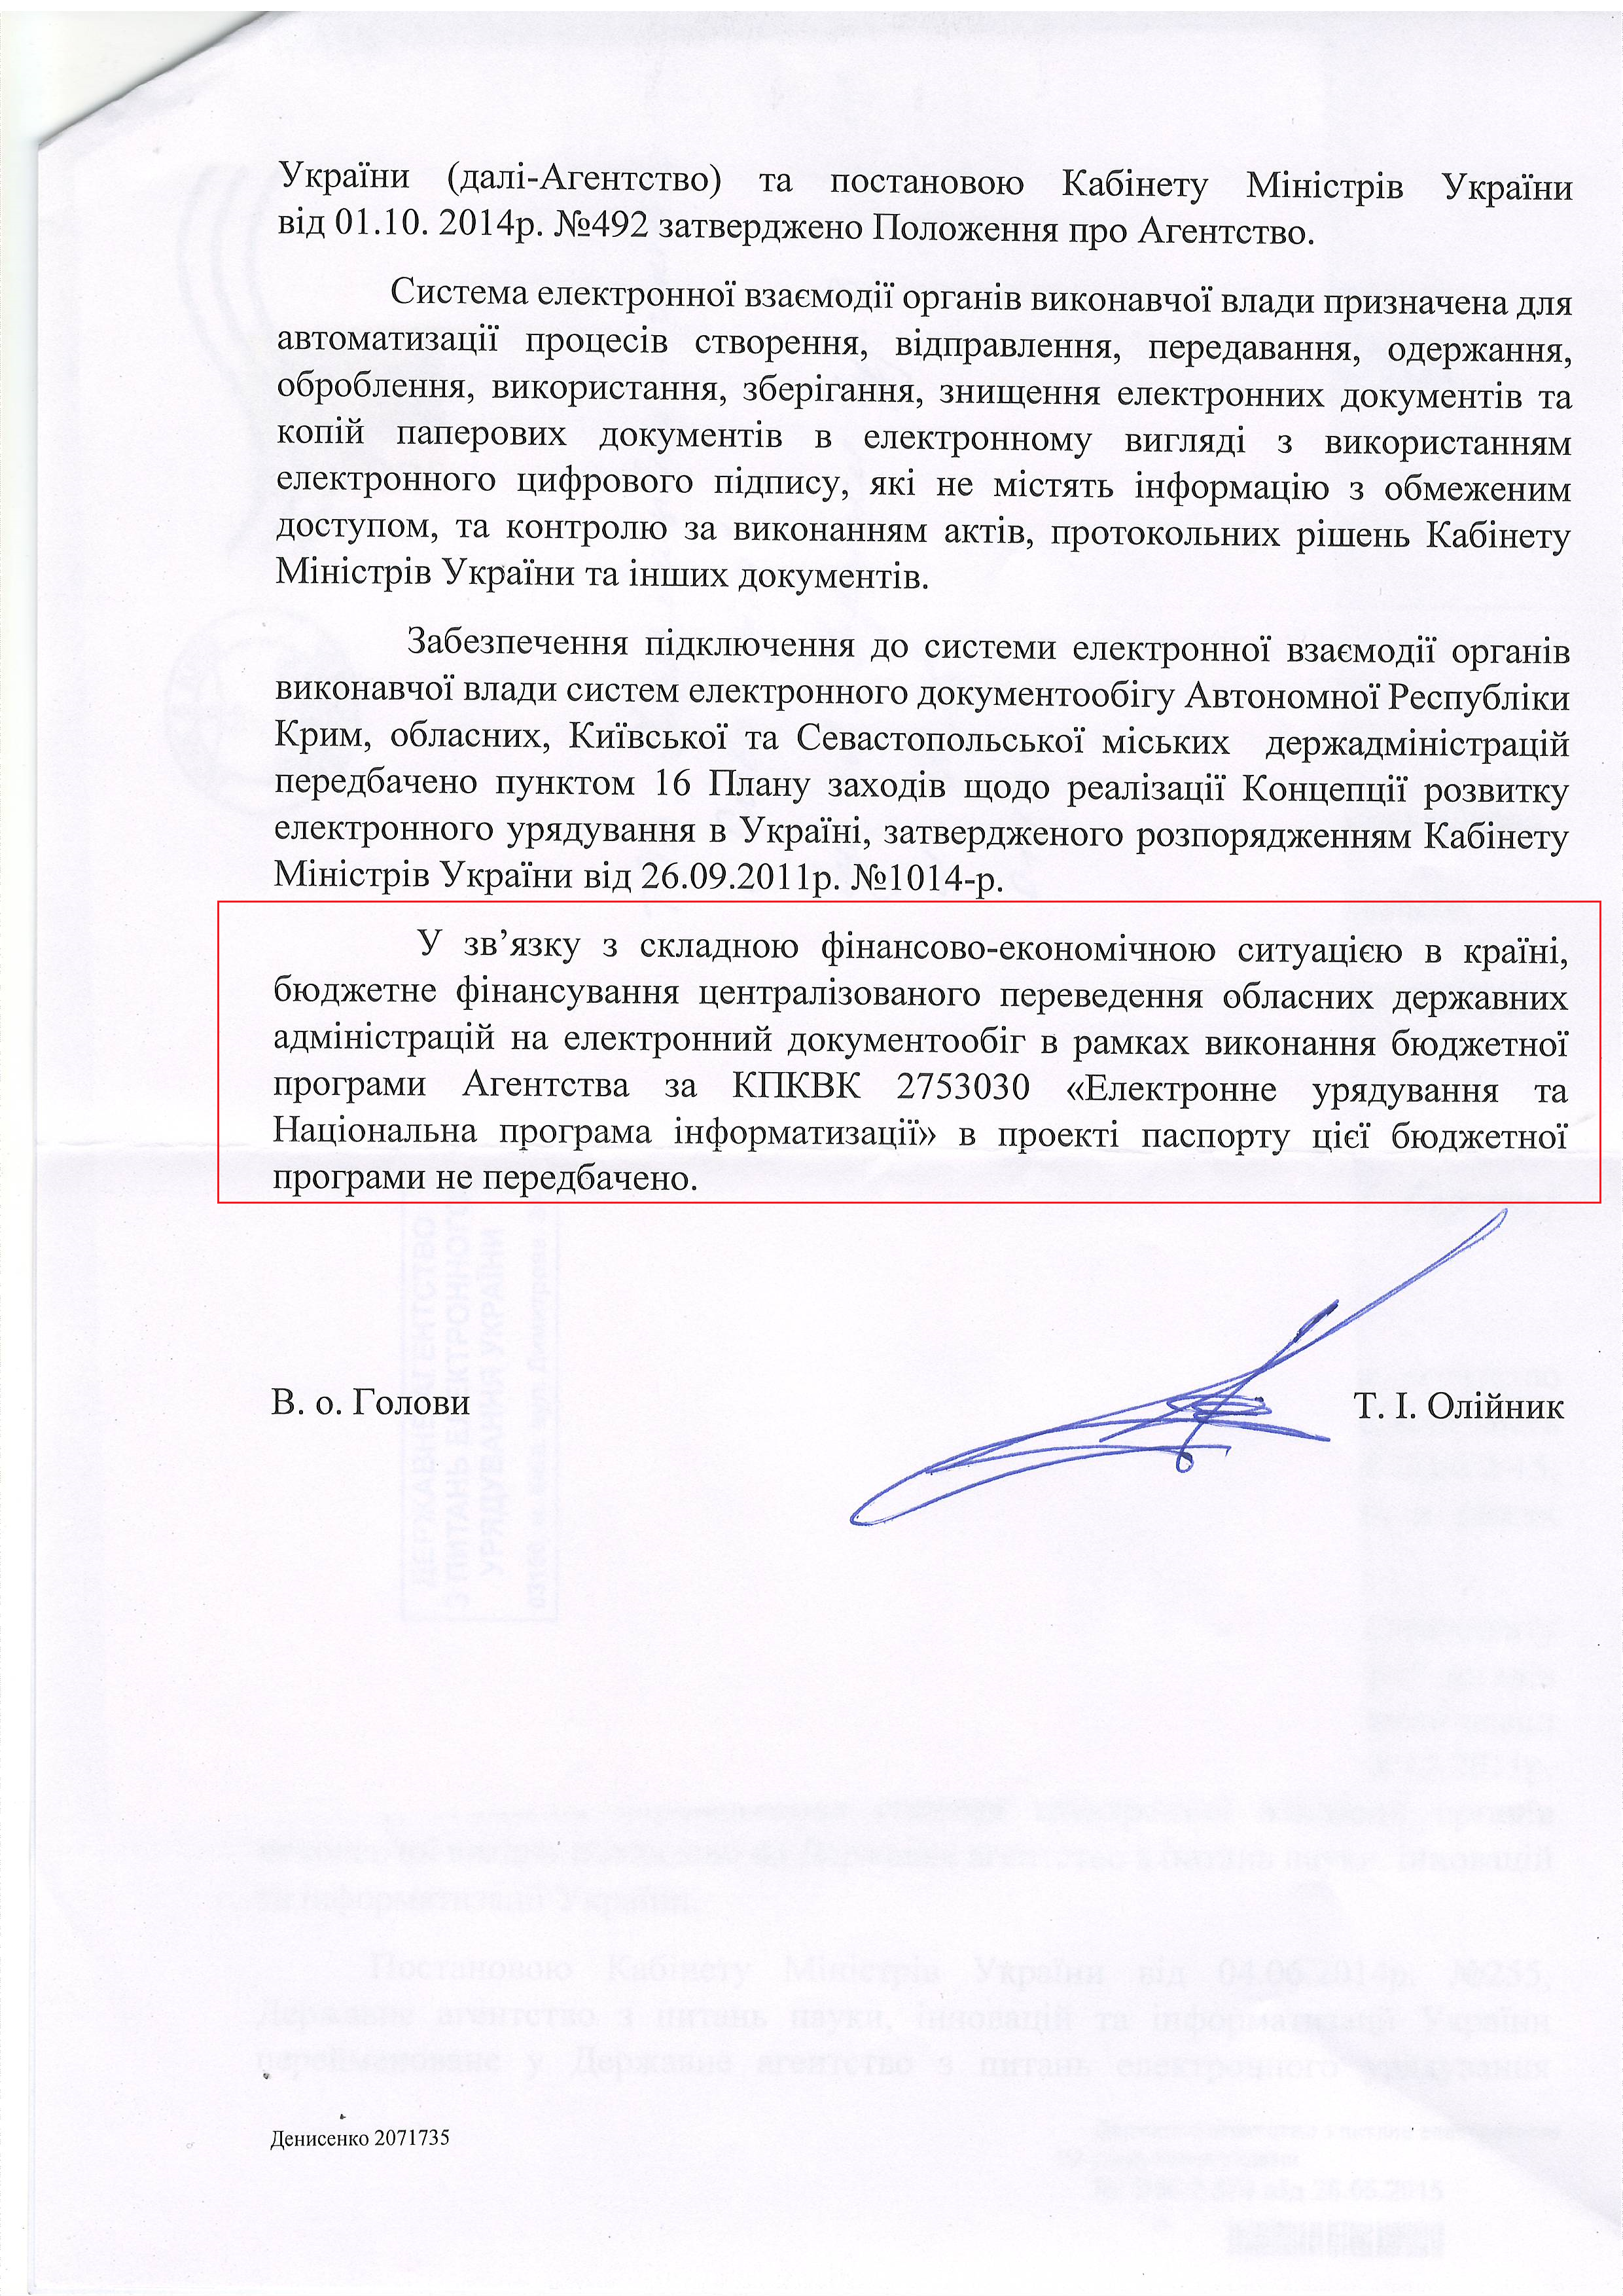 лист державного агенства з питань електронного урядування України від 26 травня 2015 року